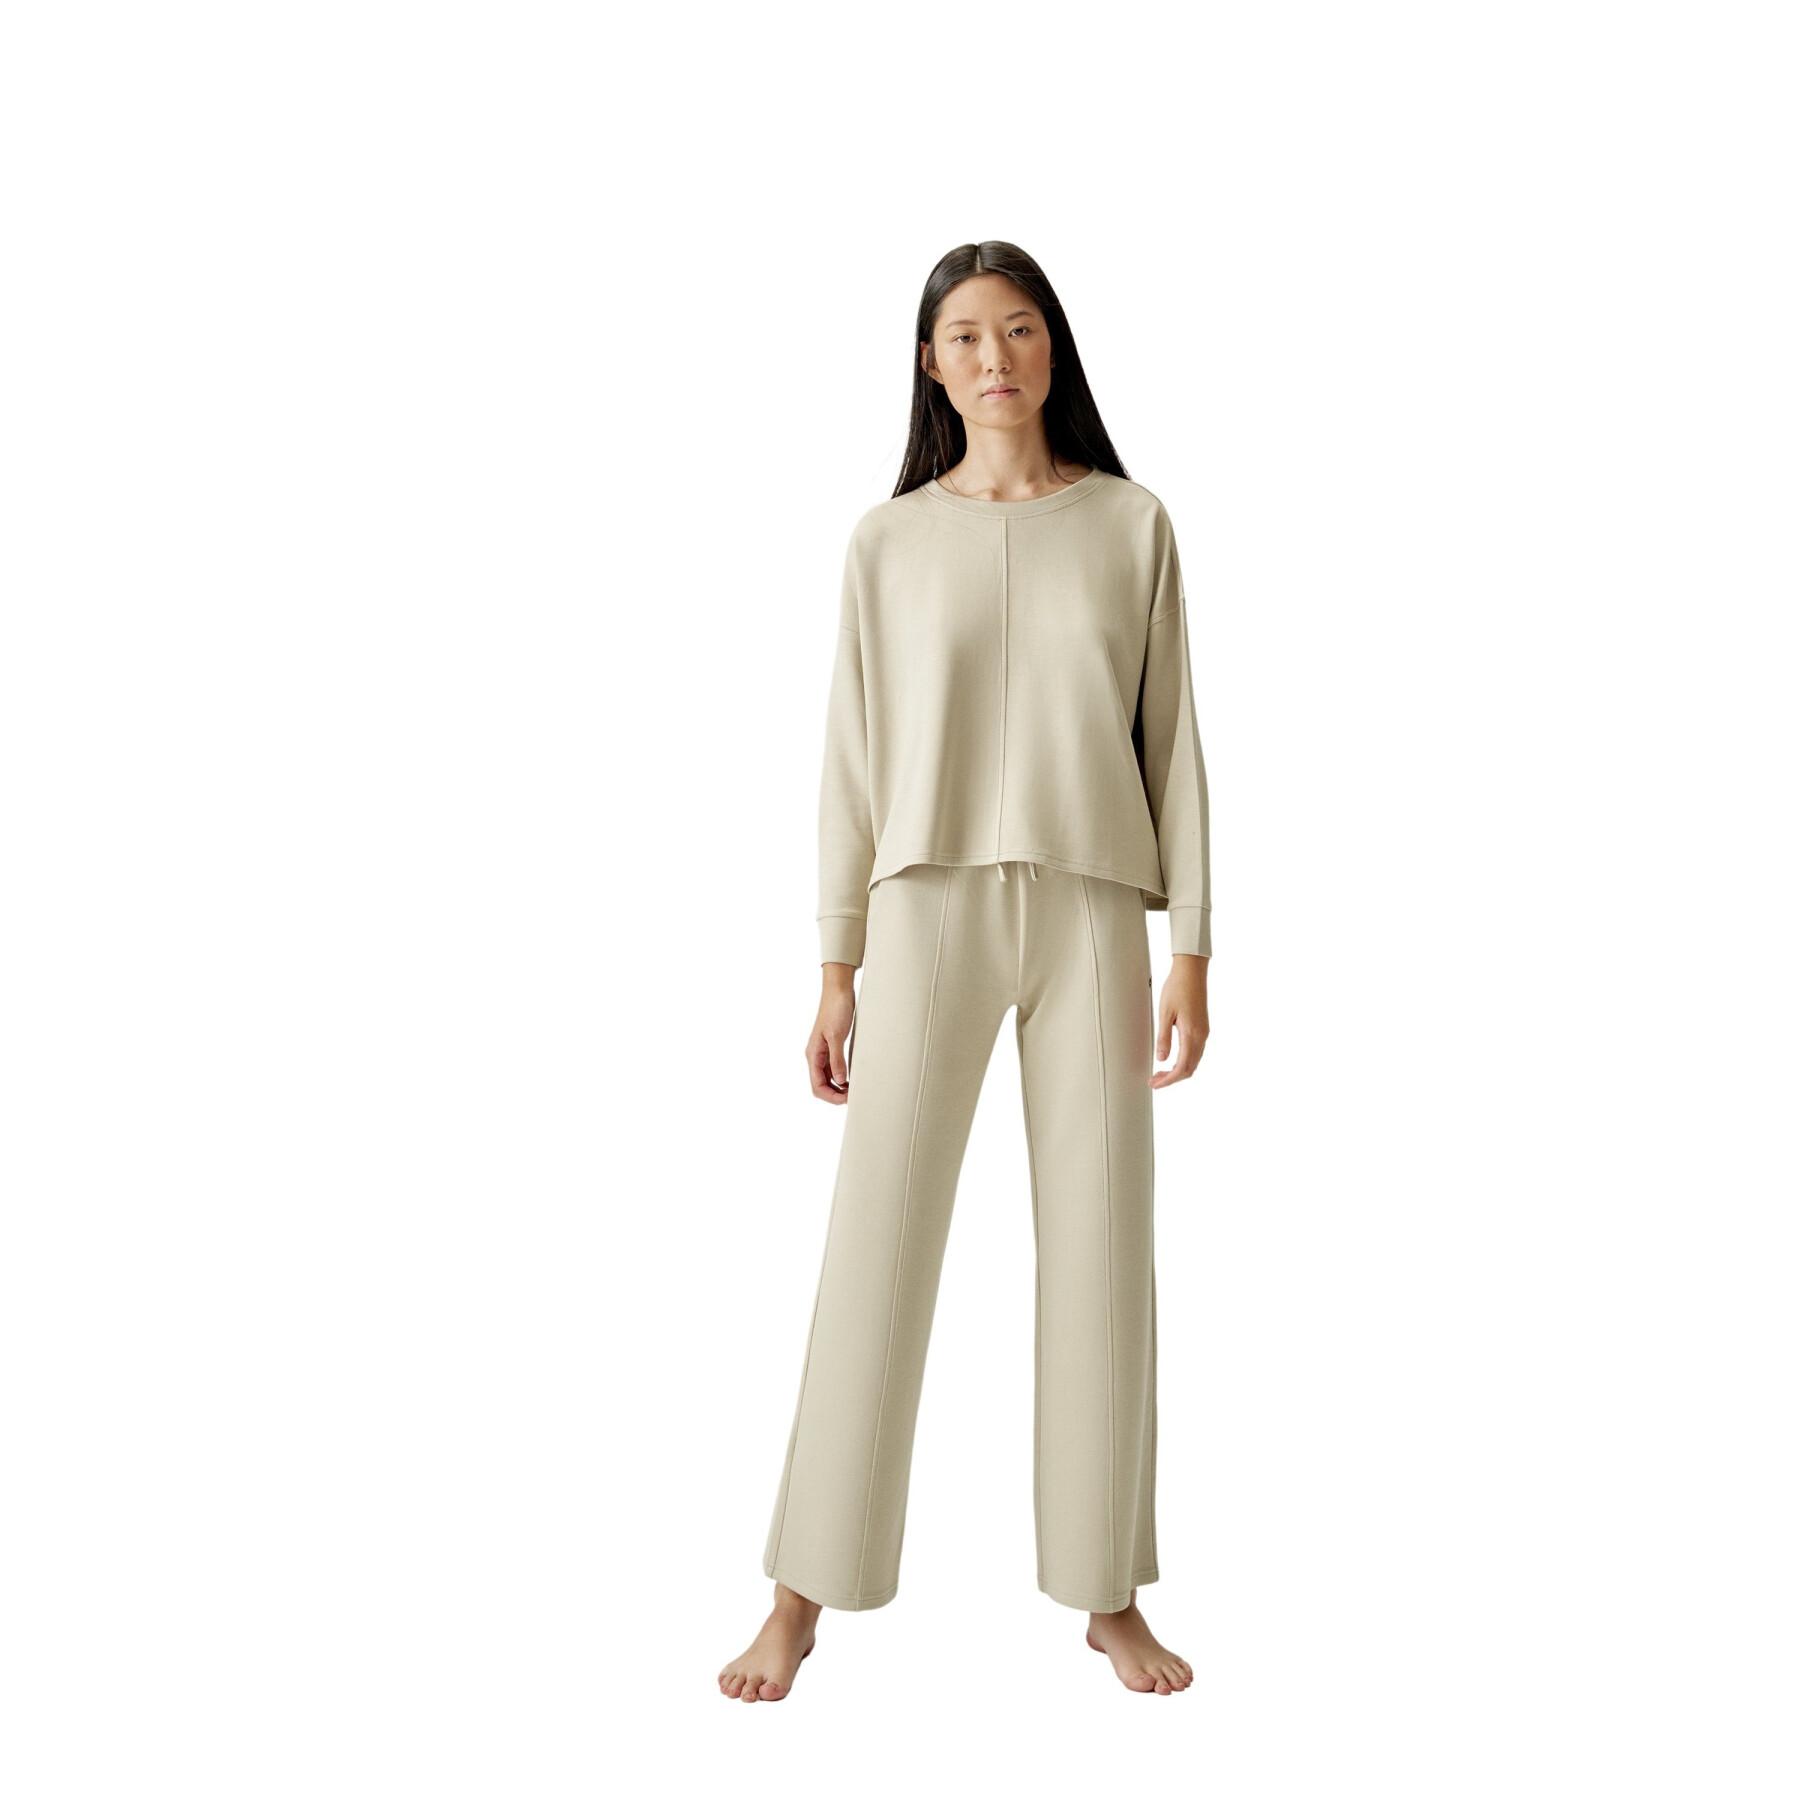 Sweatshirt Frau Born Living Yoga Loungewear